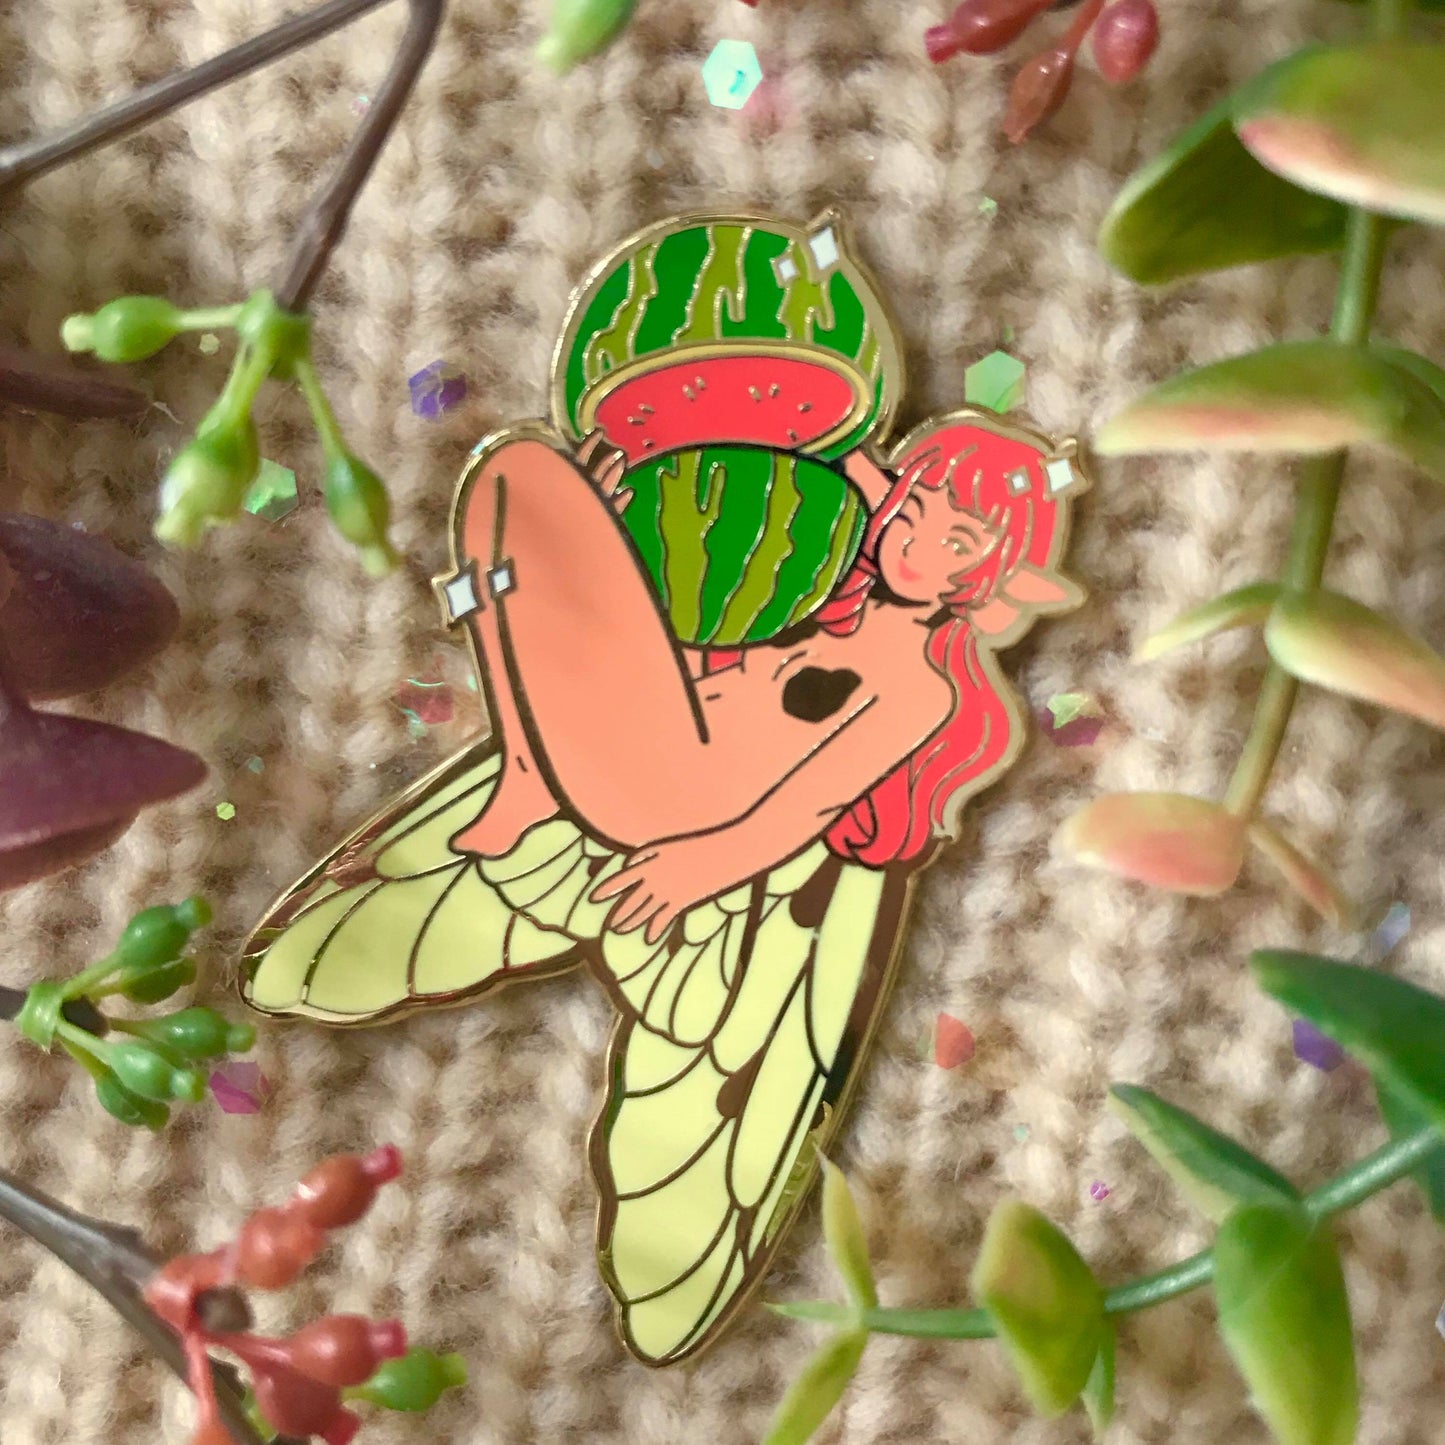 Fruit fairy Enamel pin gacha game!